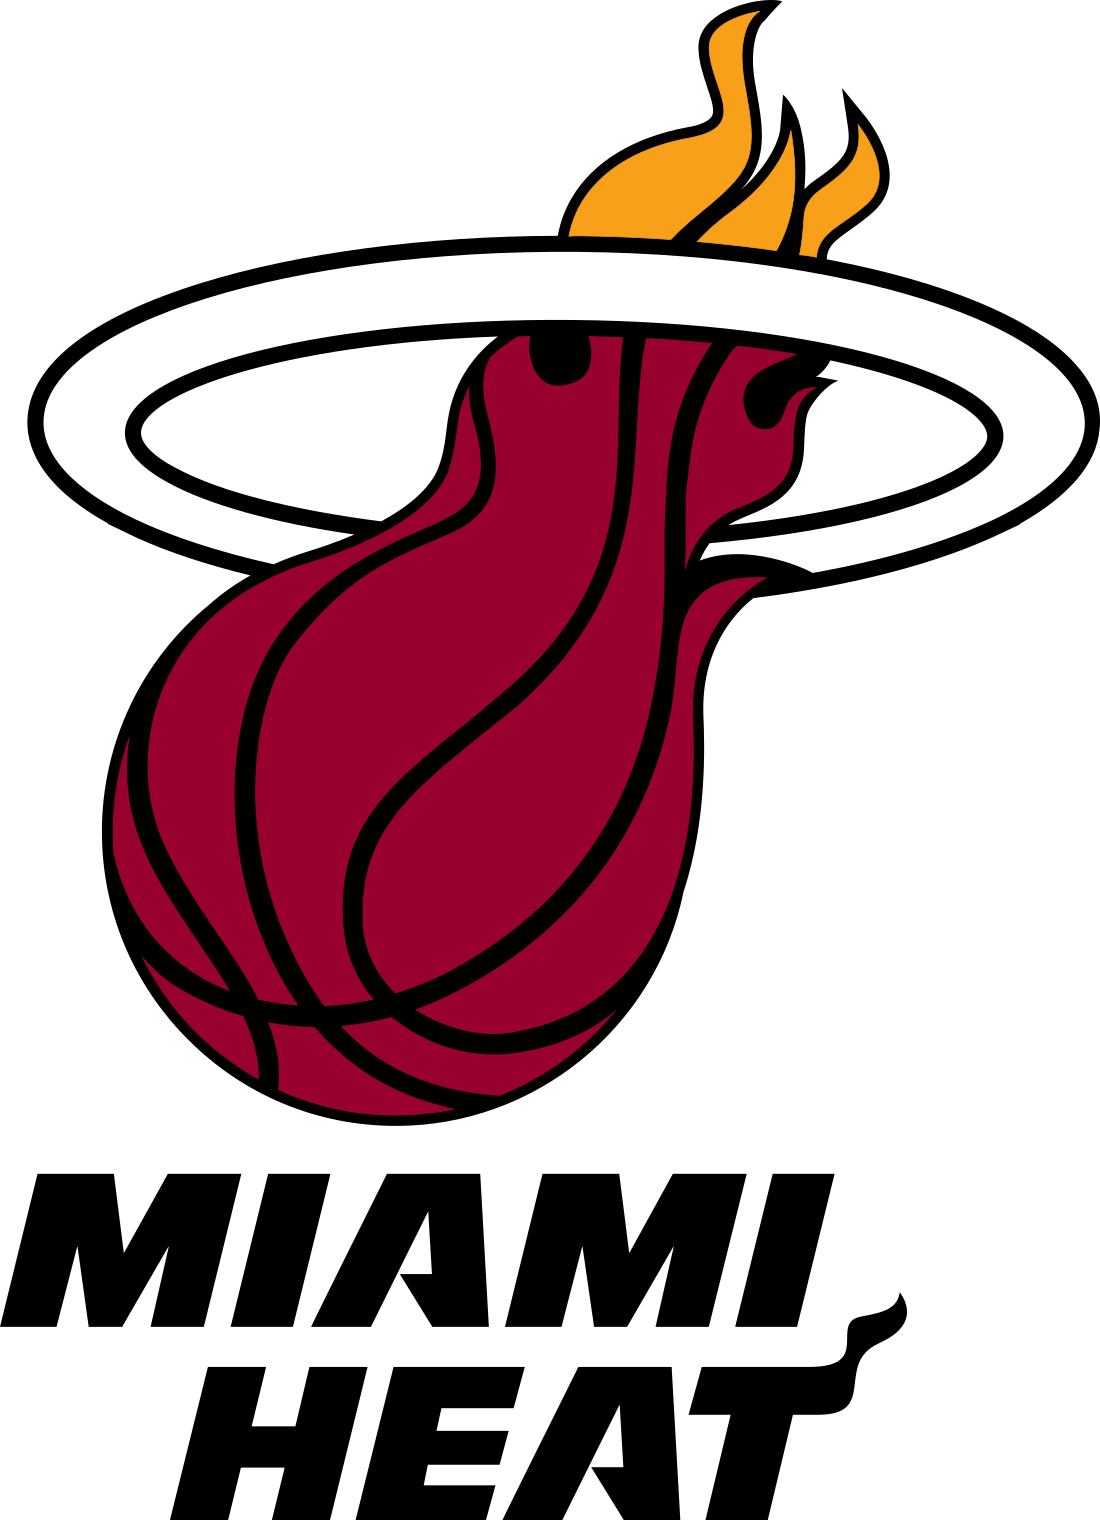 miami heat logo 3 - Miami Heat Logo